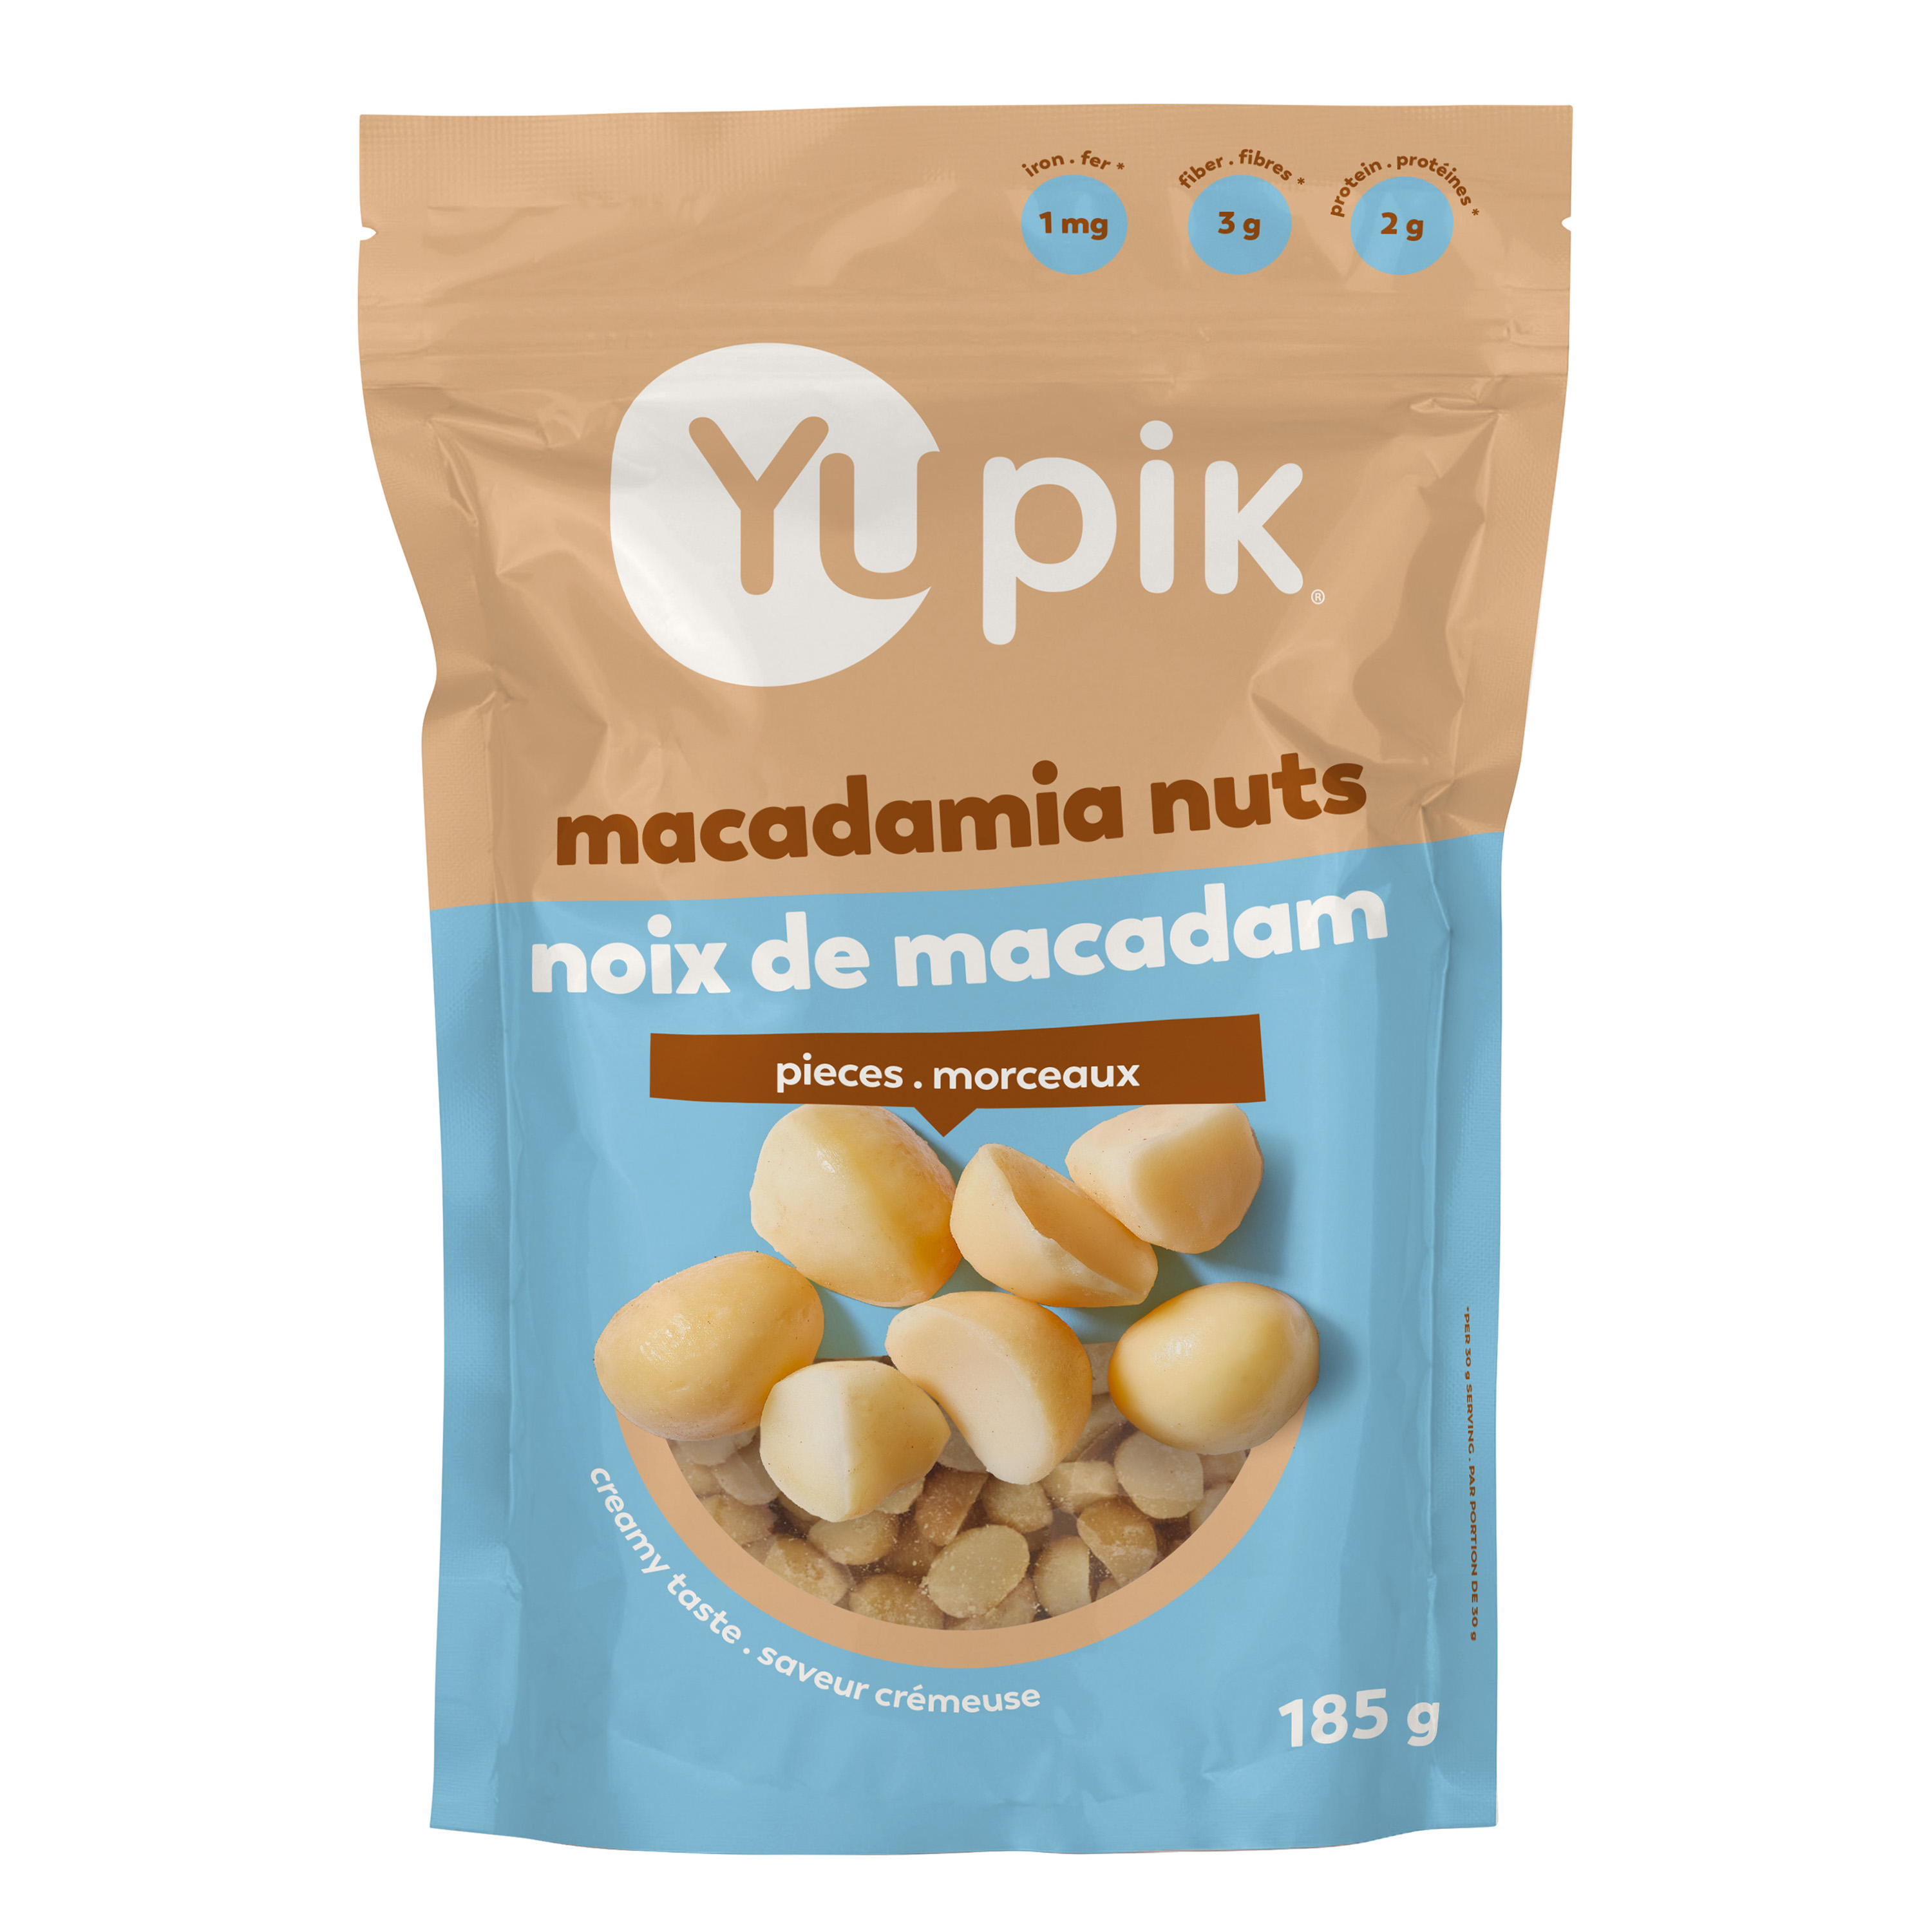 Macadamia nuts.